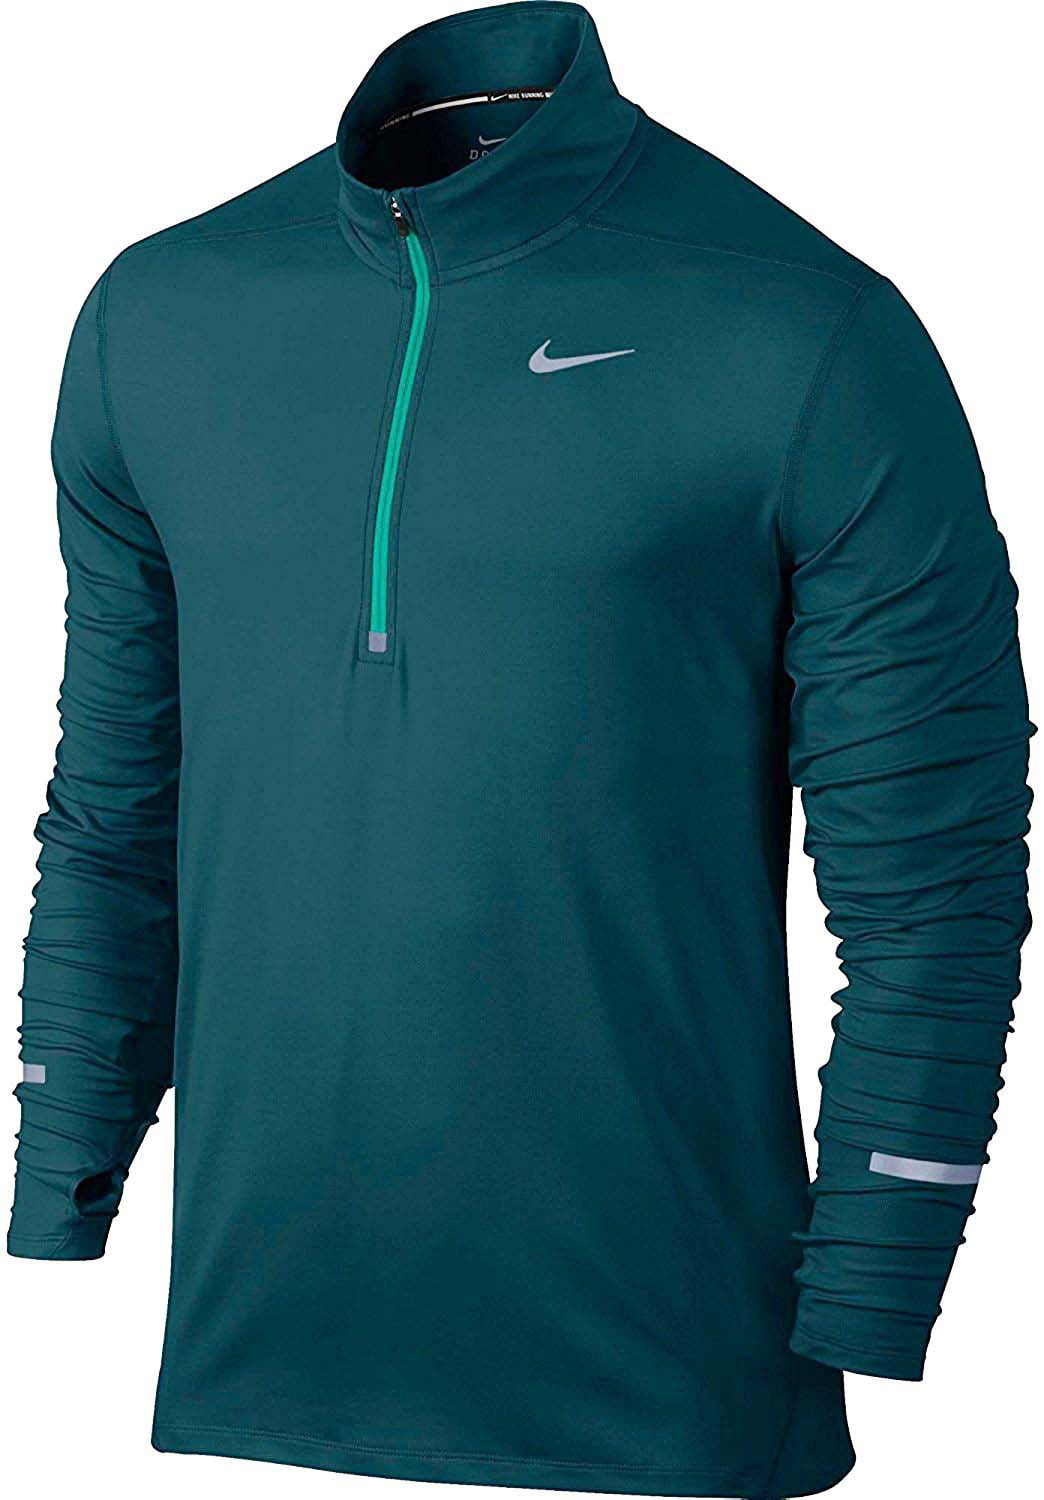 Nike Men's Dri-Fit Element 1/2 Zip Running Top - Walmart.com